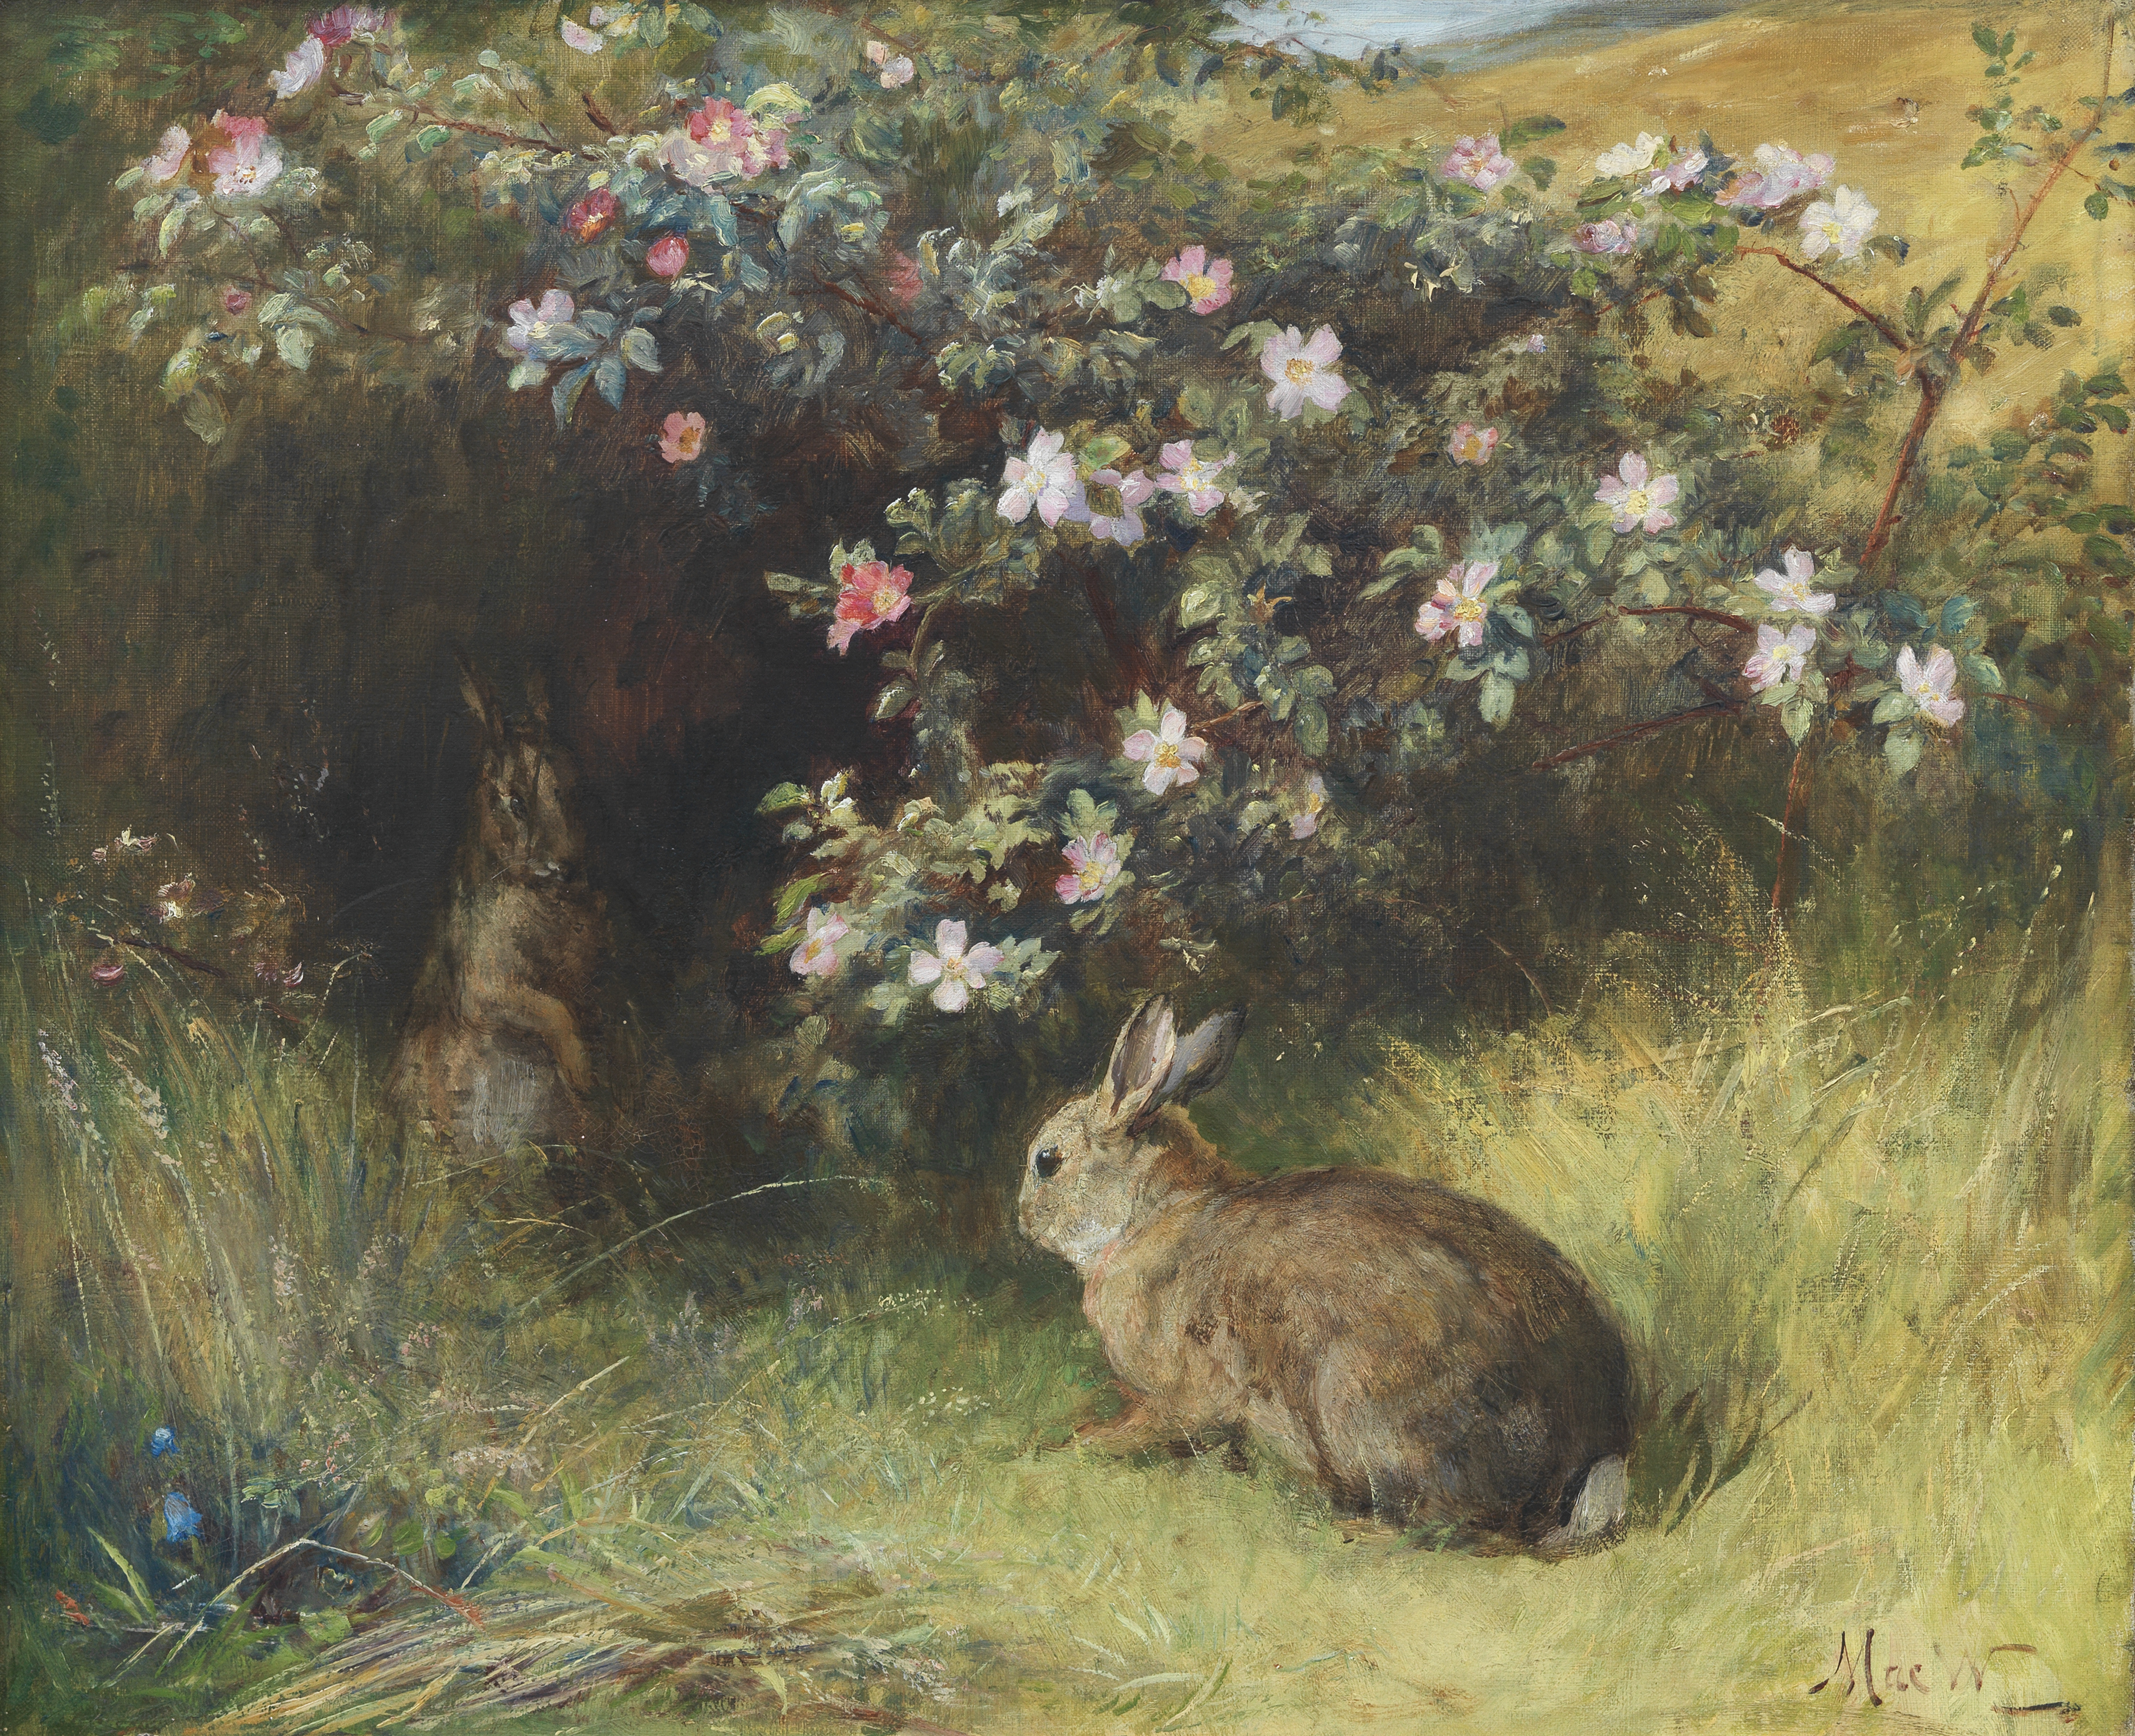 John MacWhirter RA HRSA RI RE (British, 1839-1911) Roses and Rabbits